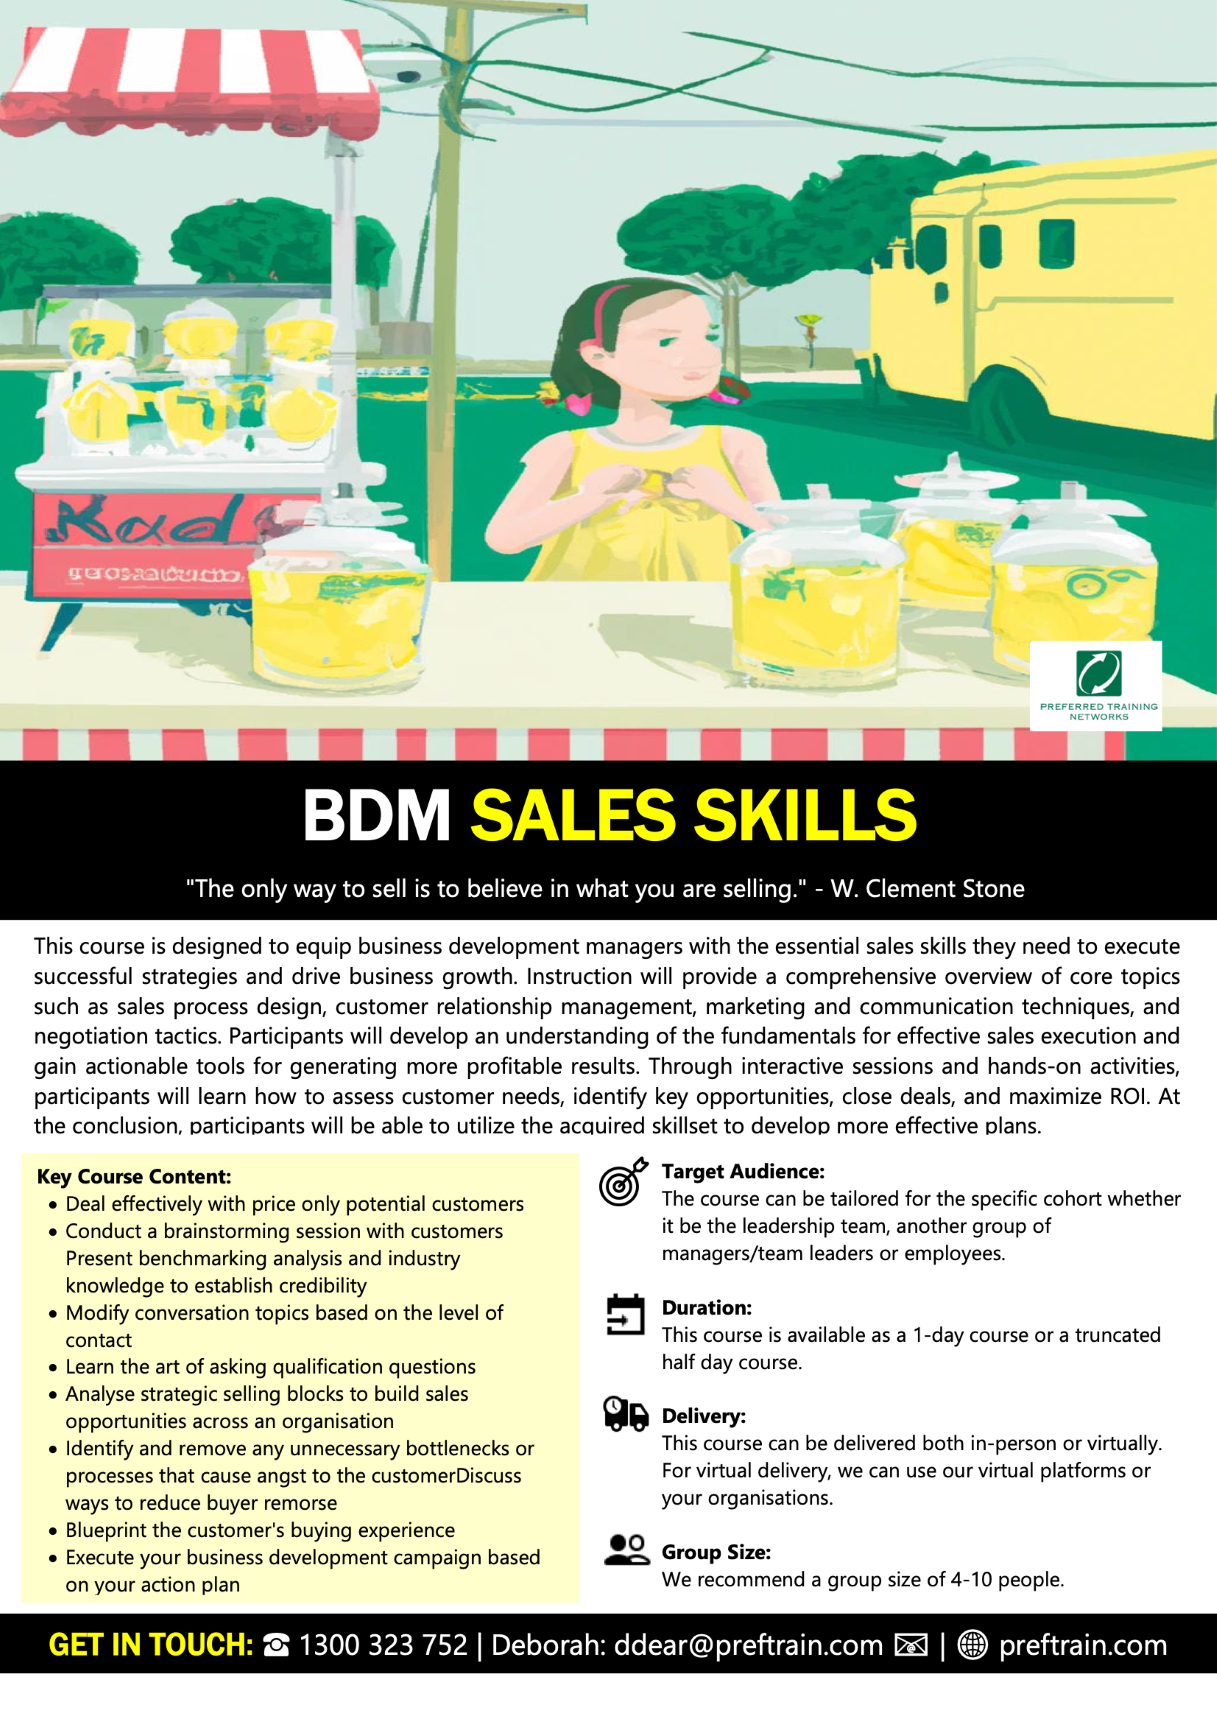 BDM Sales Skills